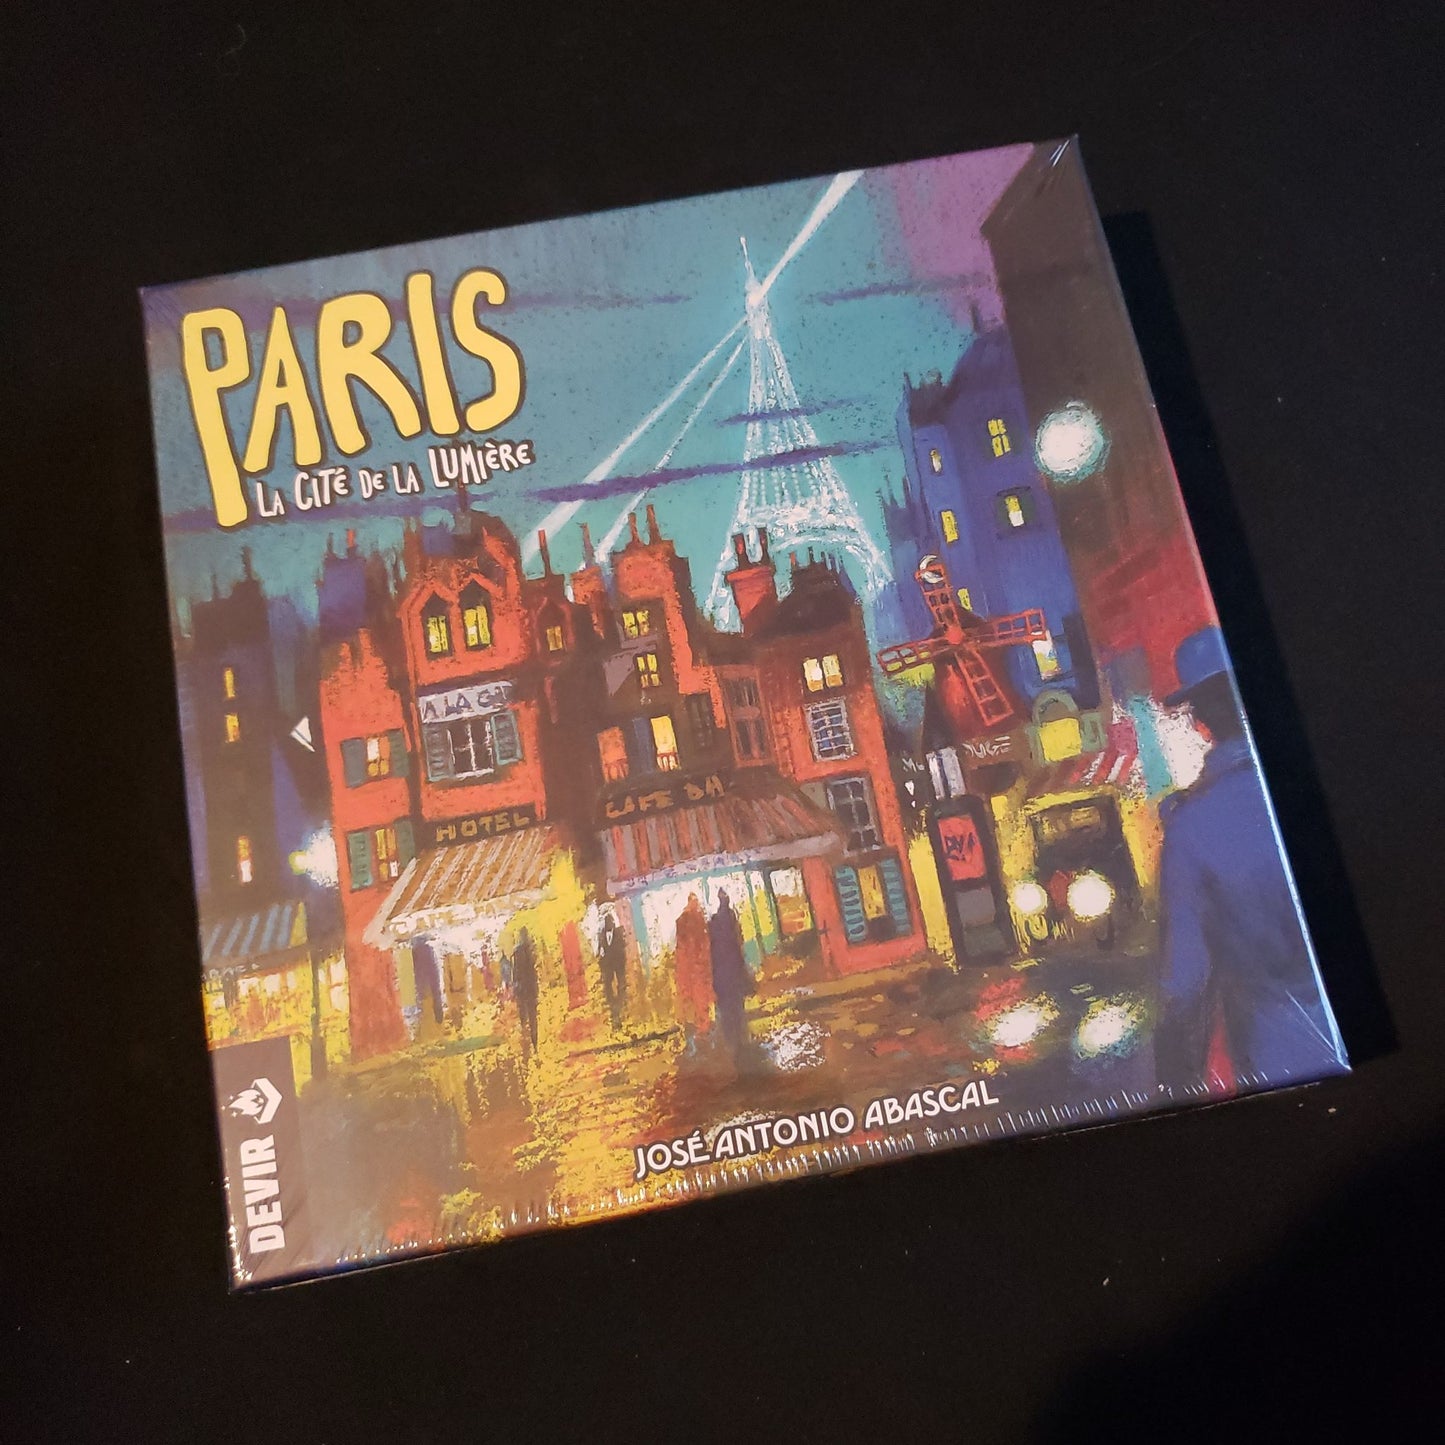 Image shows the front cover of the box of the Paris: La Cite de la Lumiere board game